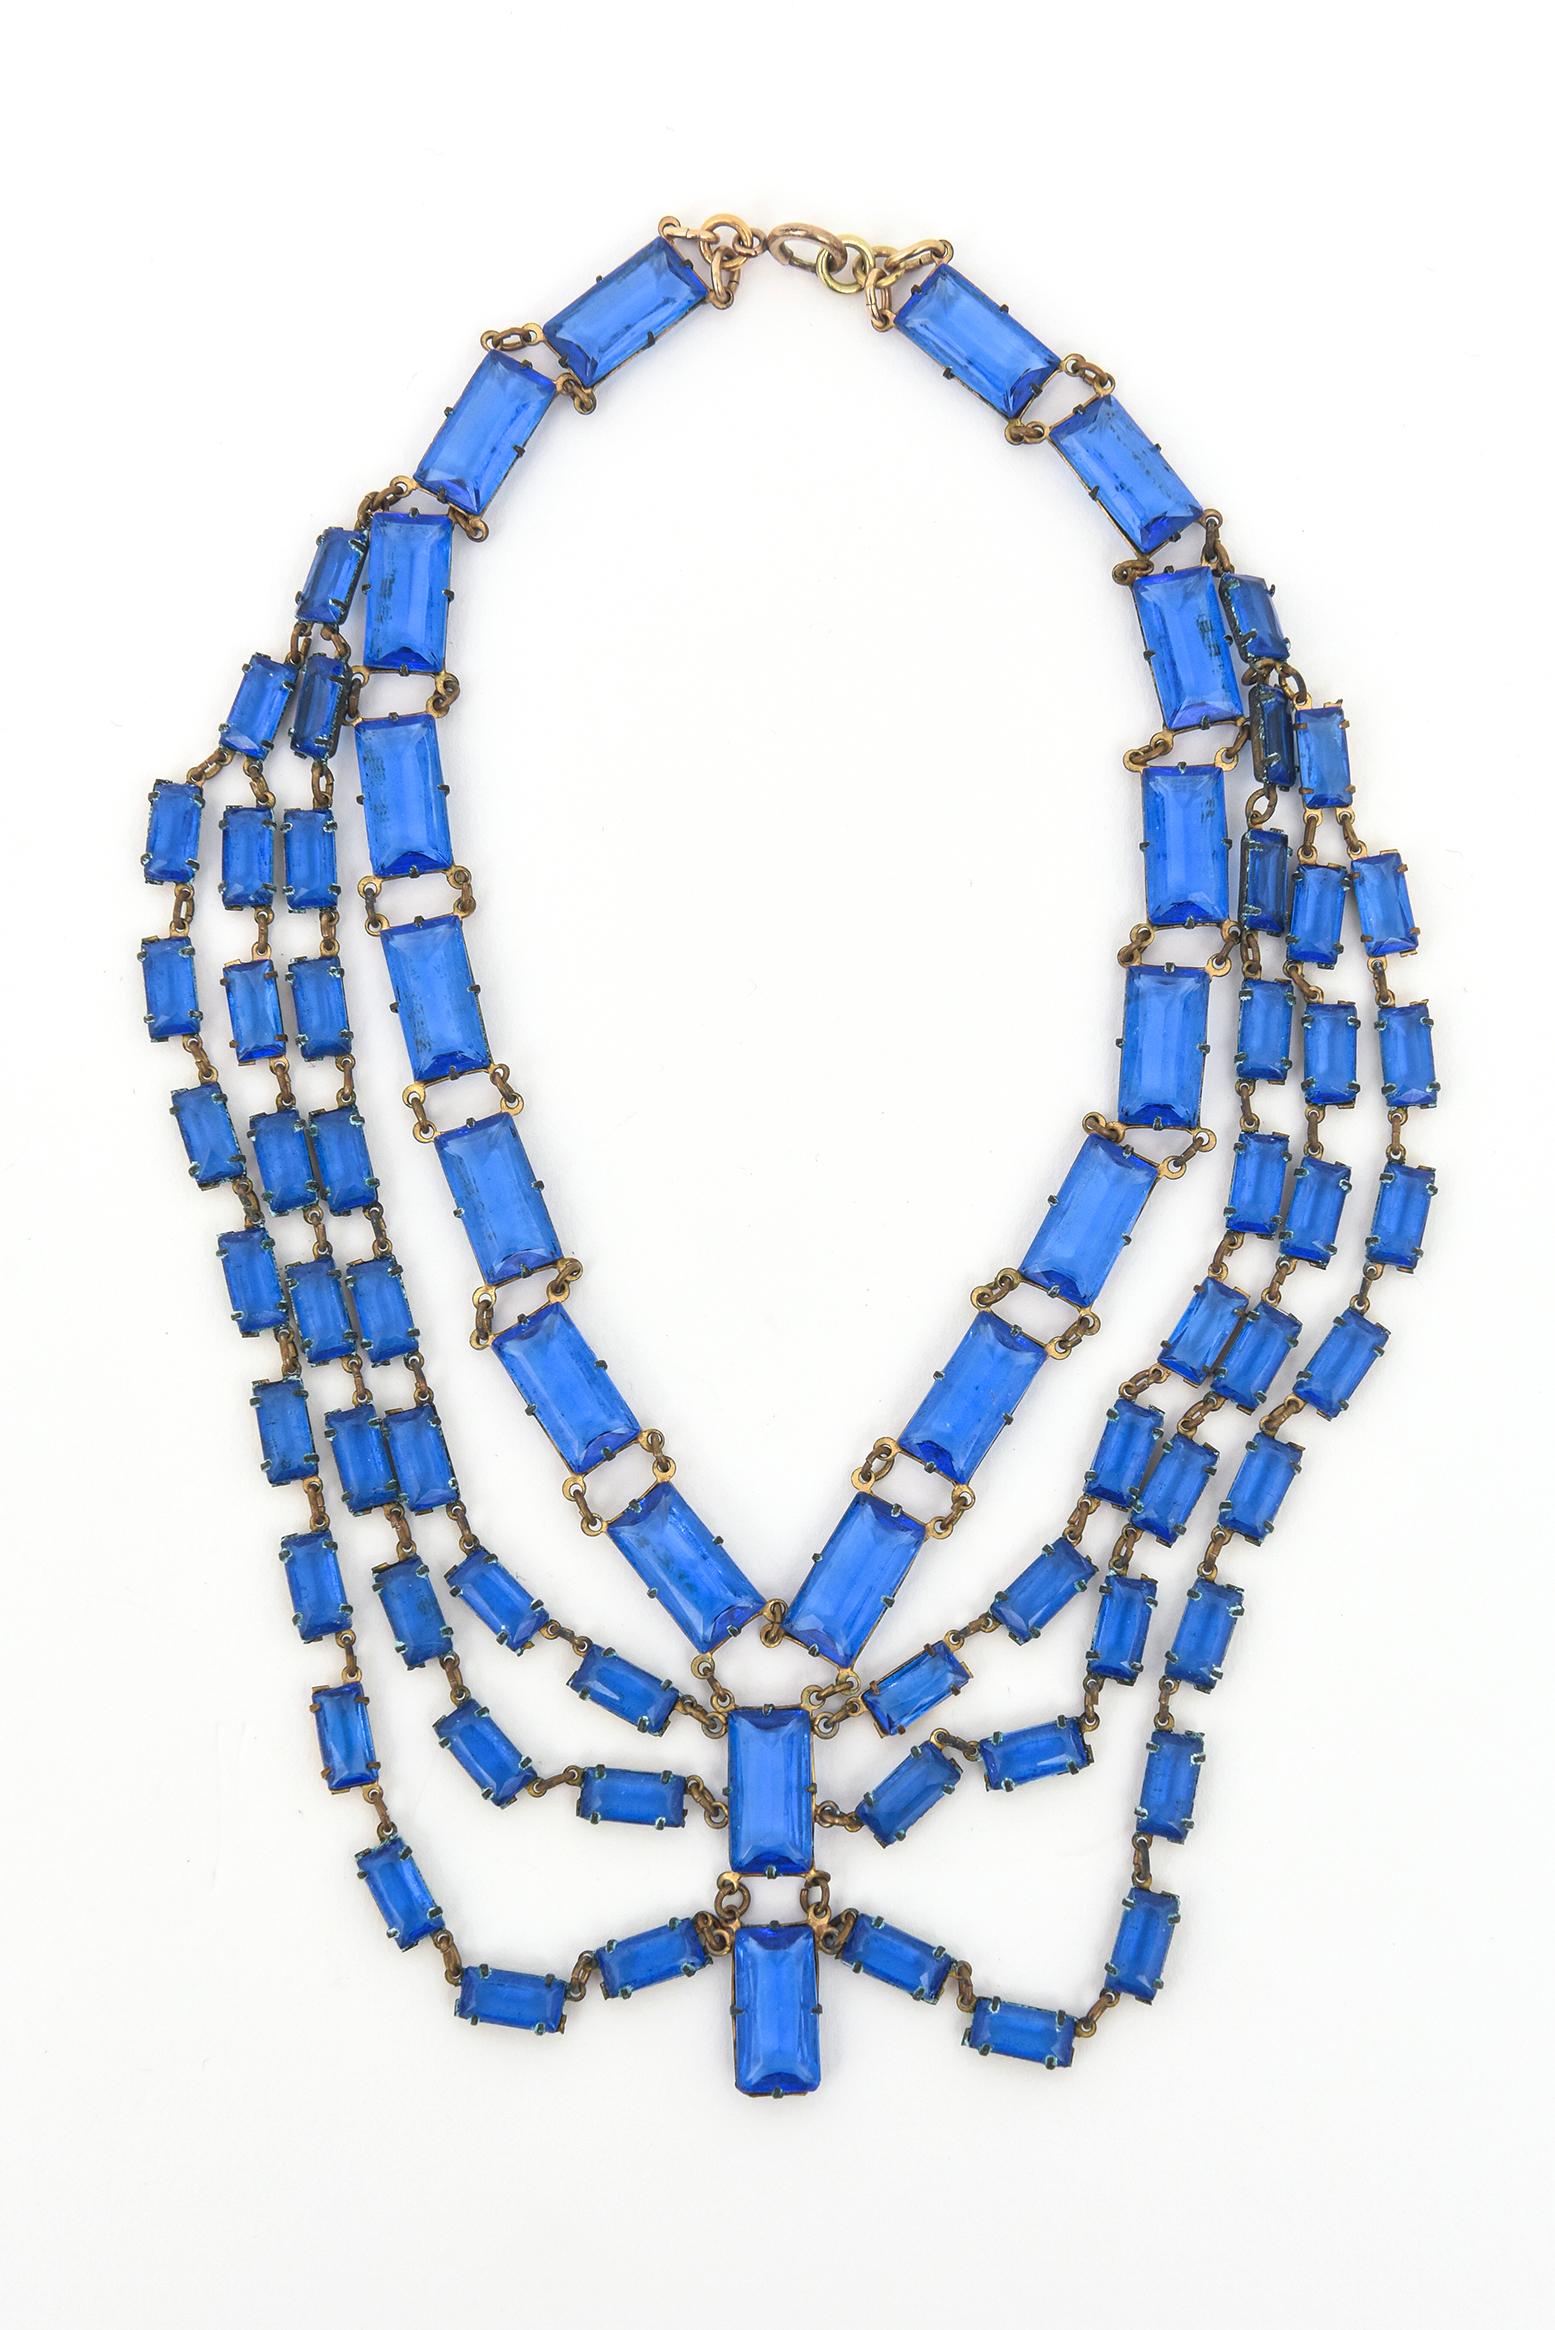 Diese atemberaubende und elegante originale Art-Deco-Halskette mit mehreren Ebenen und Strängen aus azurblauem Glas ist ein wahrer Blickfang am Hals. Es gibt 4 abgestufte Reihen und ein paar hängende Glasscheiben. Wir haben es seit über 35 Jahren in